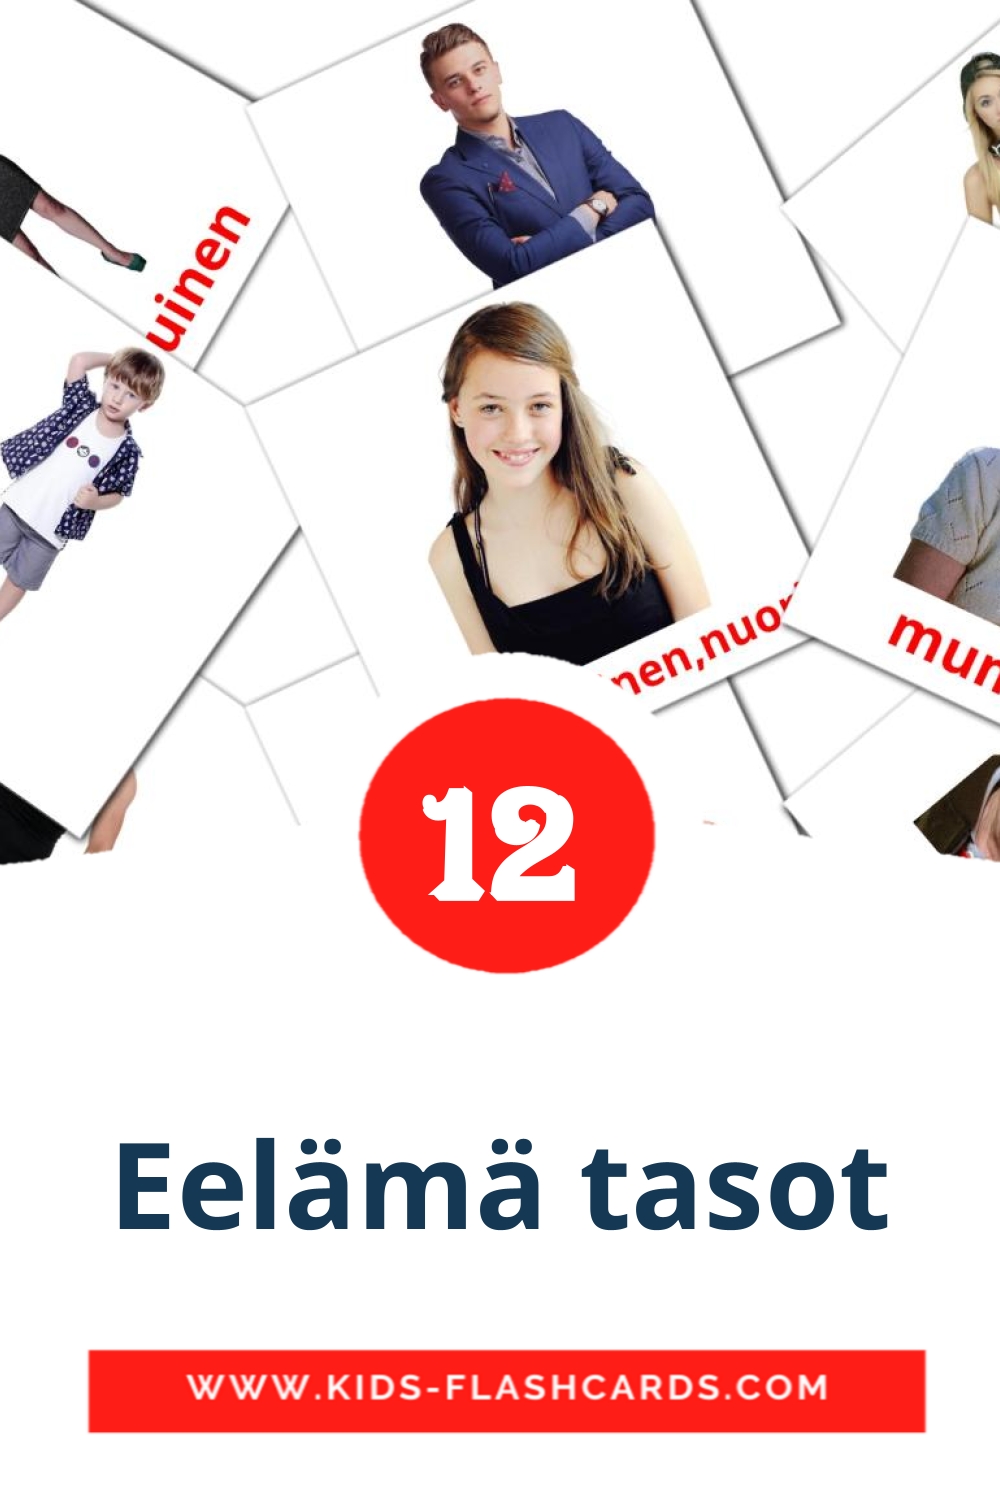 12 Cartões com Imagens de Eelämä tasot para Jardim de Infância em finlandês